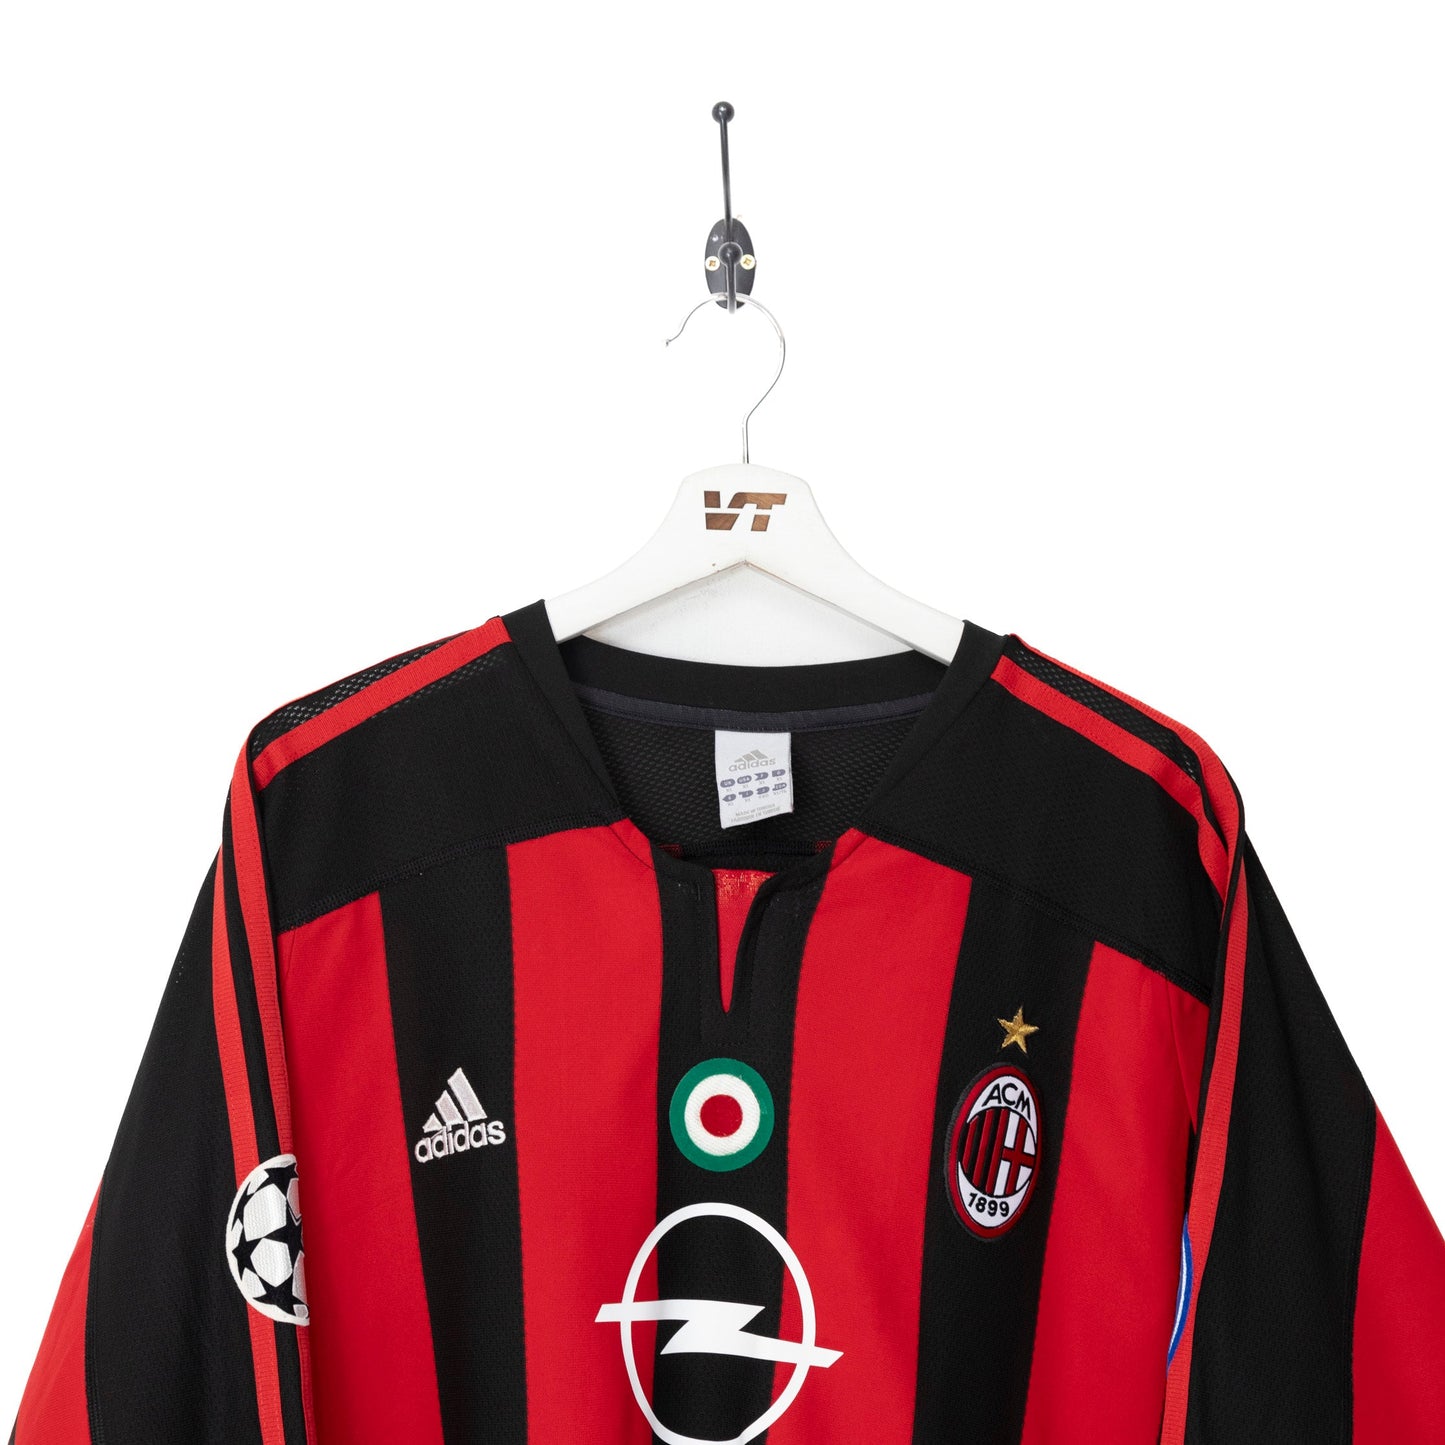 2003/04 AC MIlan x Adidas 'Gattuso 8' Home Football Shirt